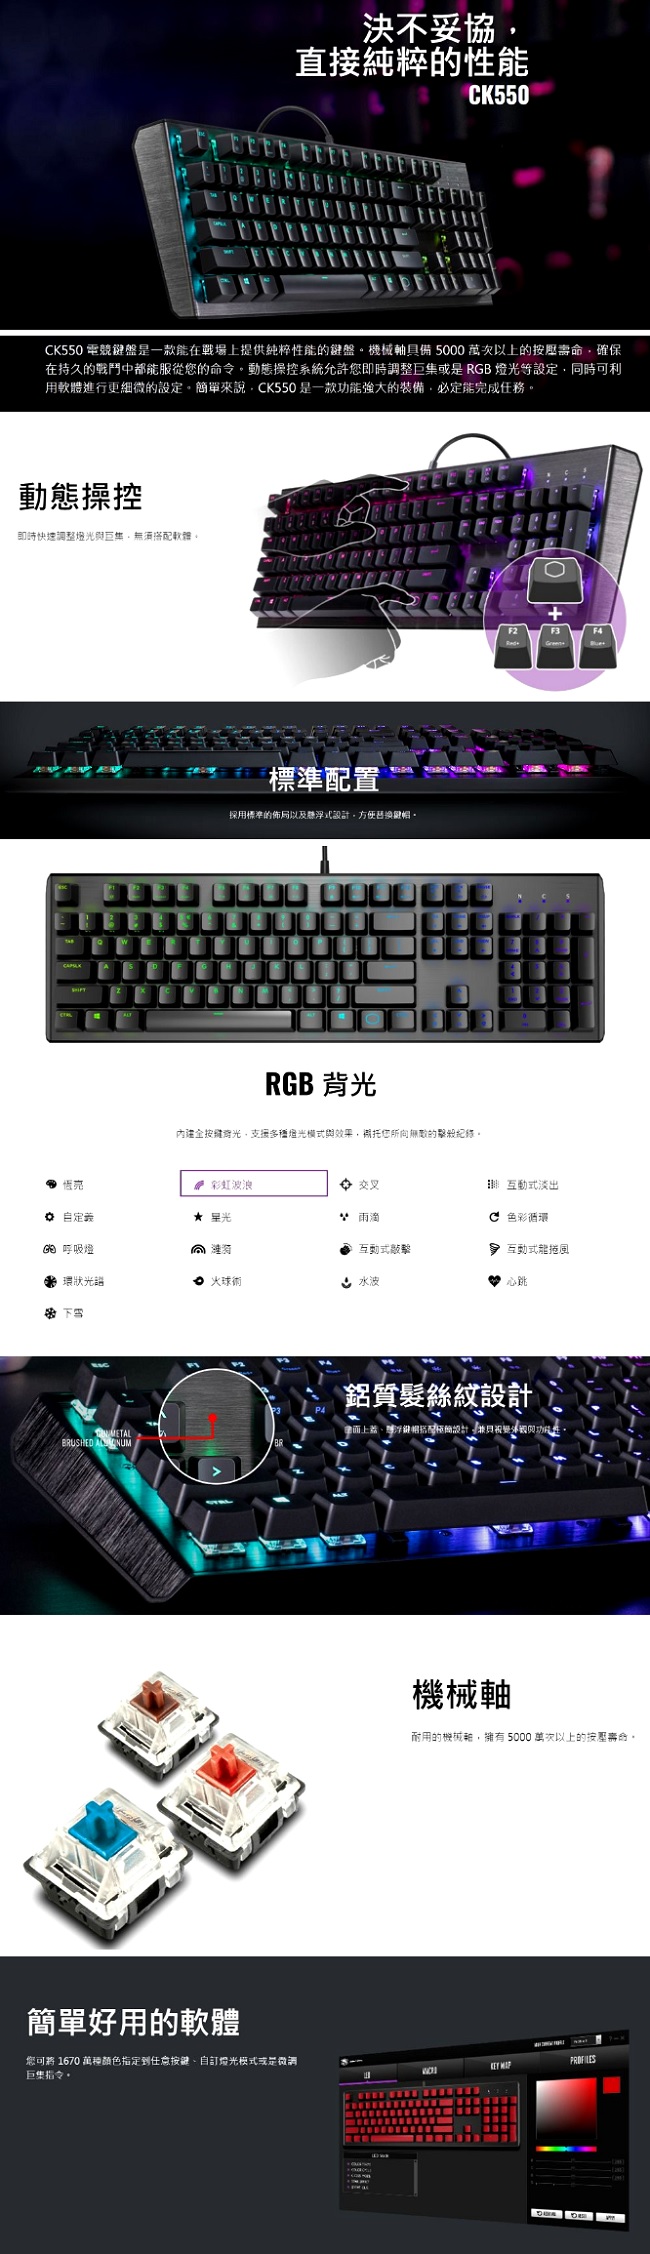 Cooler Master 酷媽 CK550 機械式 RGB 電競鍵盤 青軸 中文